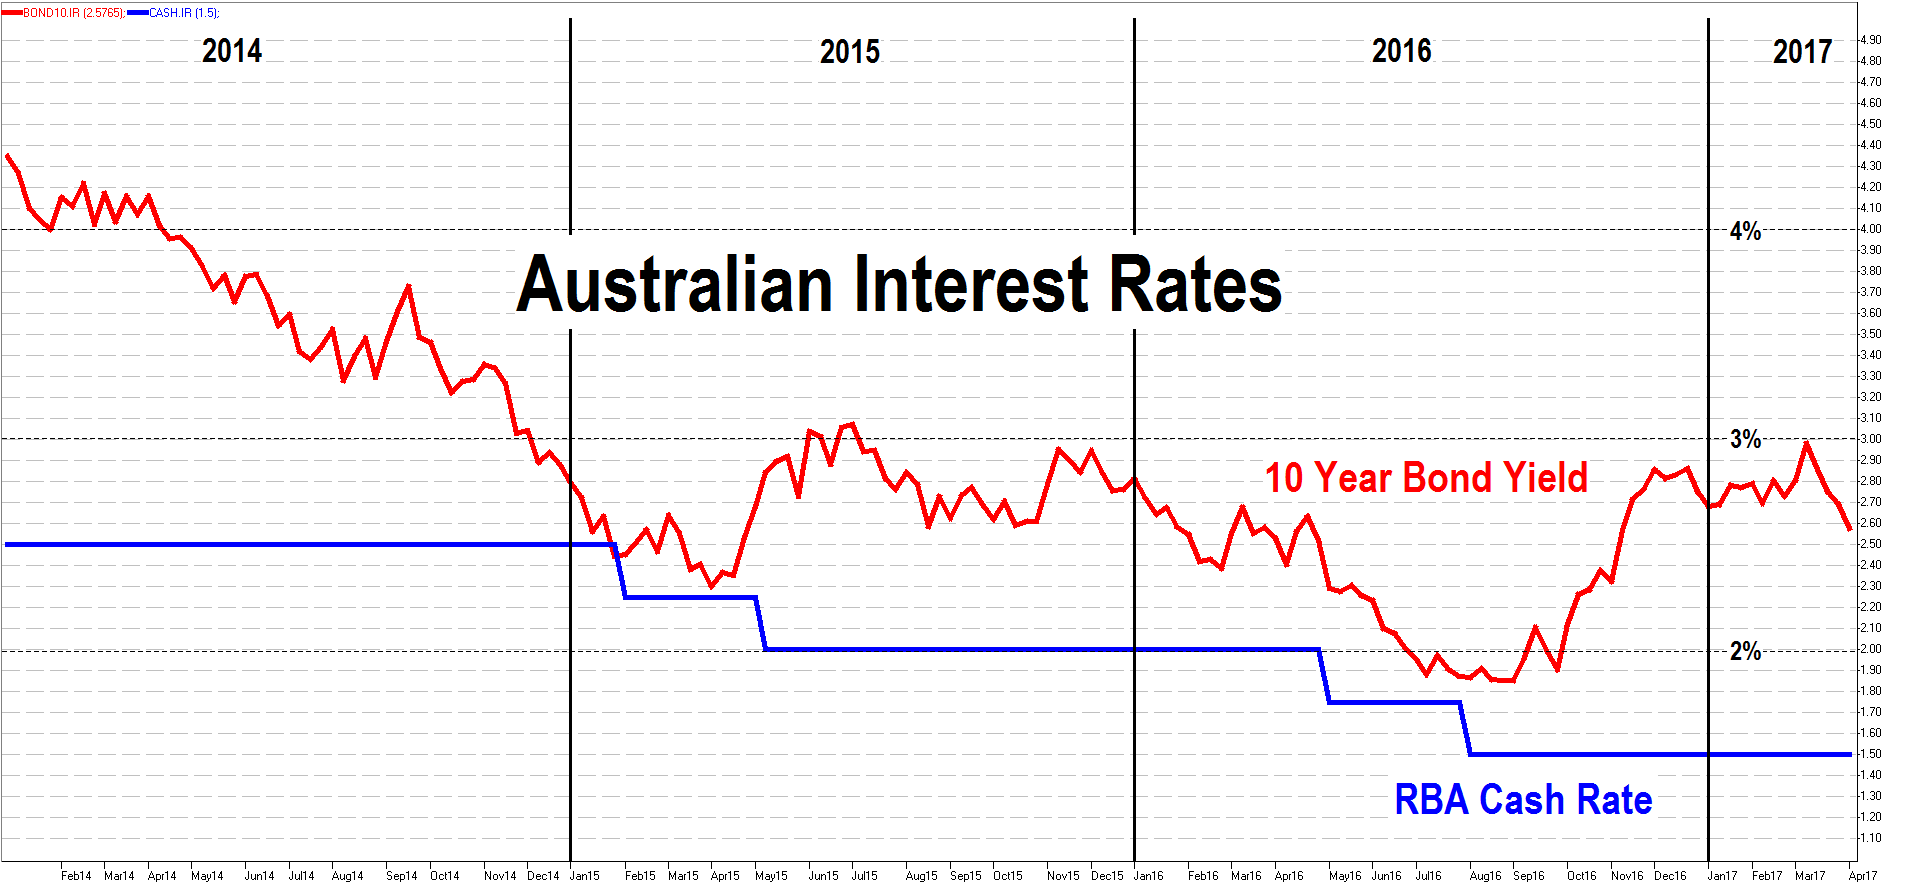 Australian Interest Rates